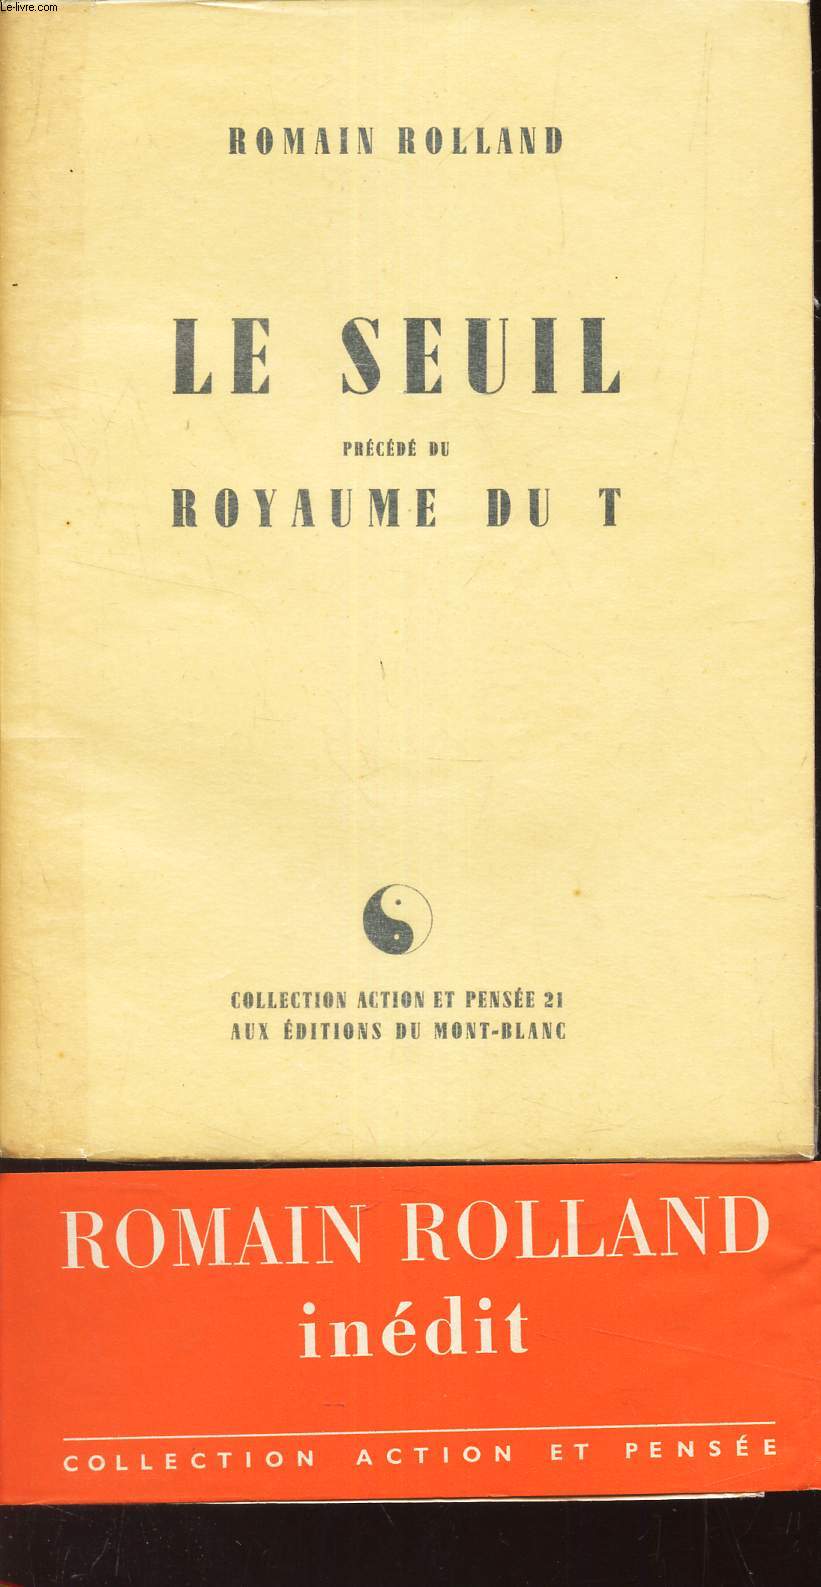 LE SEUIL - preced de ROYAUME DU T.